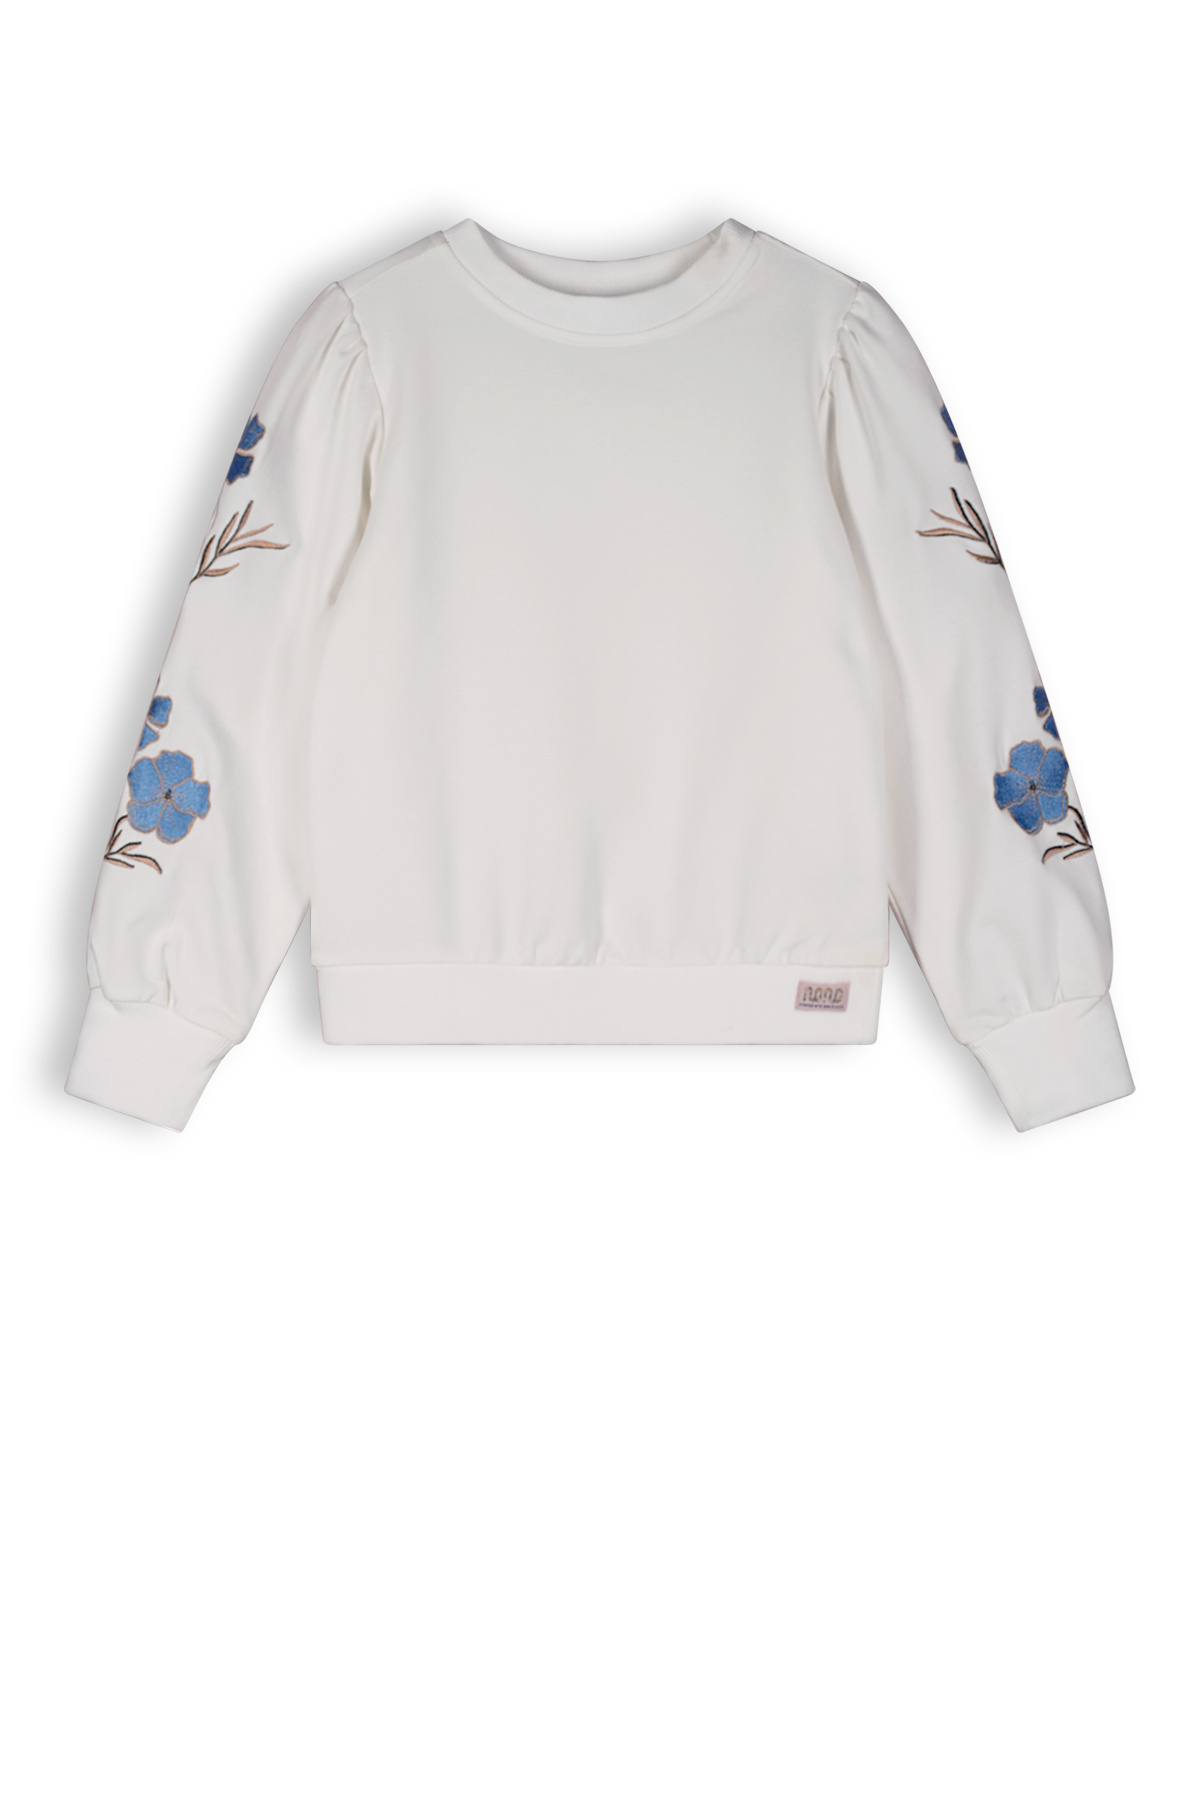 Meisjes sweater embroidery - Kate - Sneeuw wit